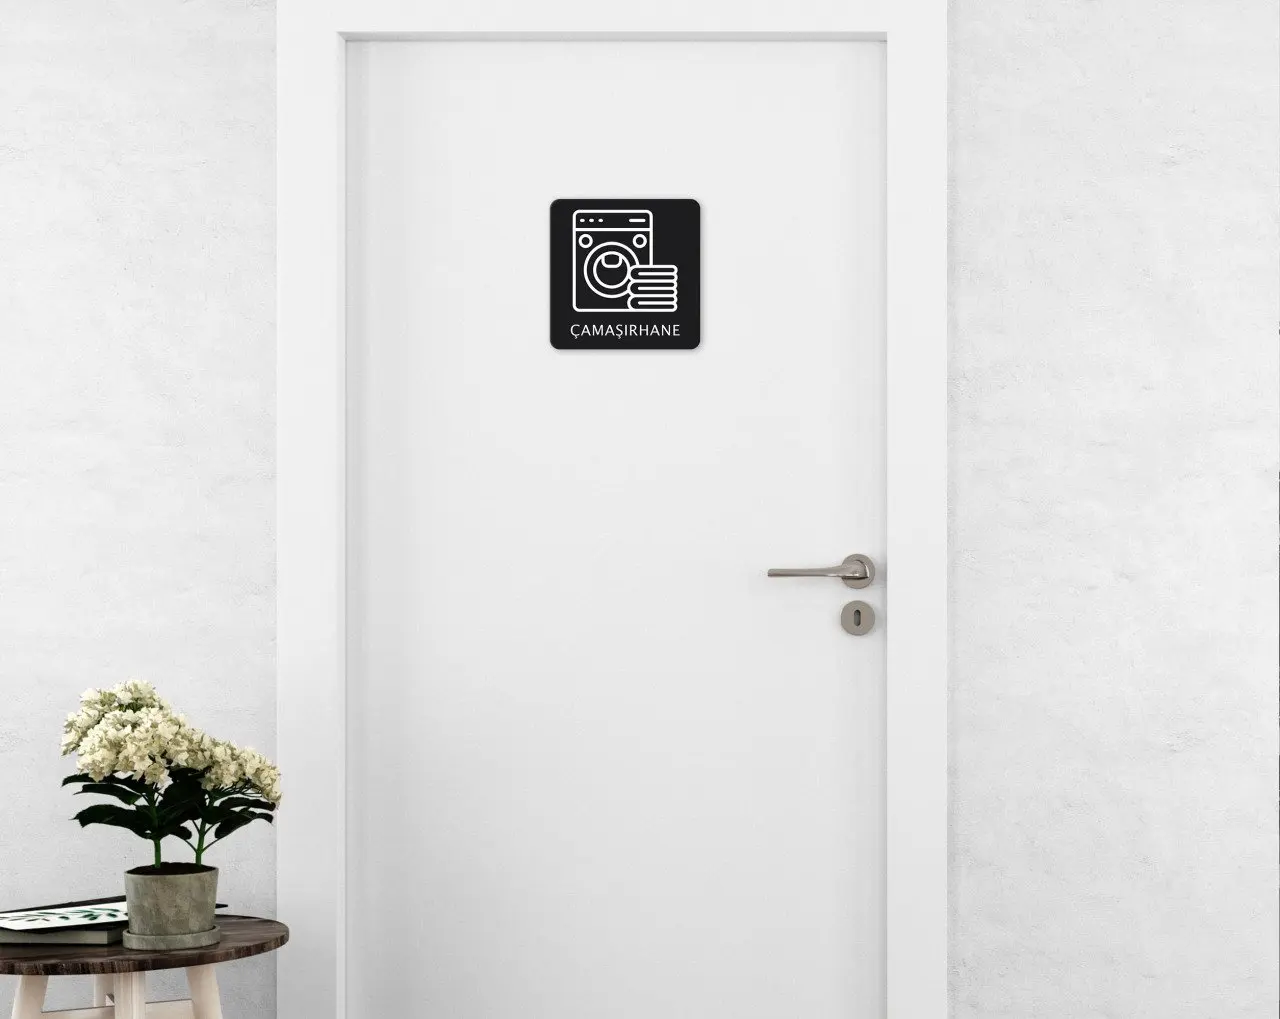 

BK дверная перегородка для домашнего белья, Современная Удобная надежная декорация, подарок, качественный дизайн, простой прохладный черный